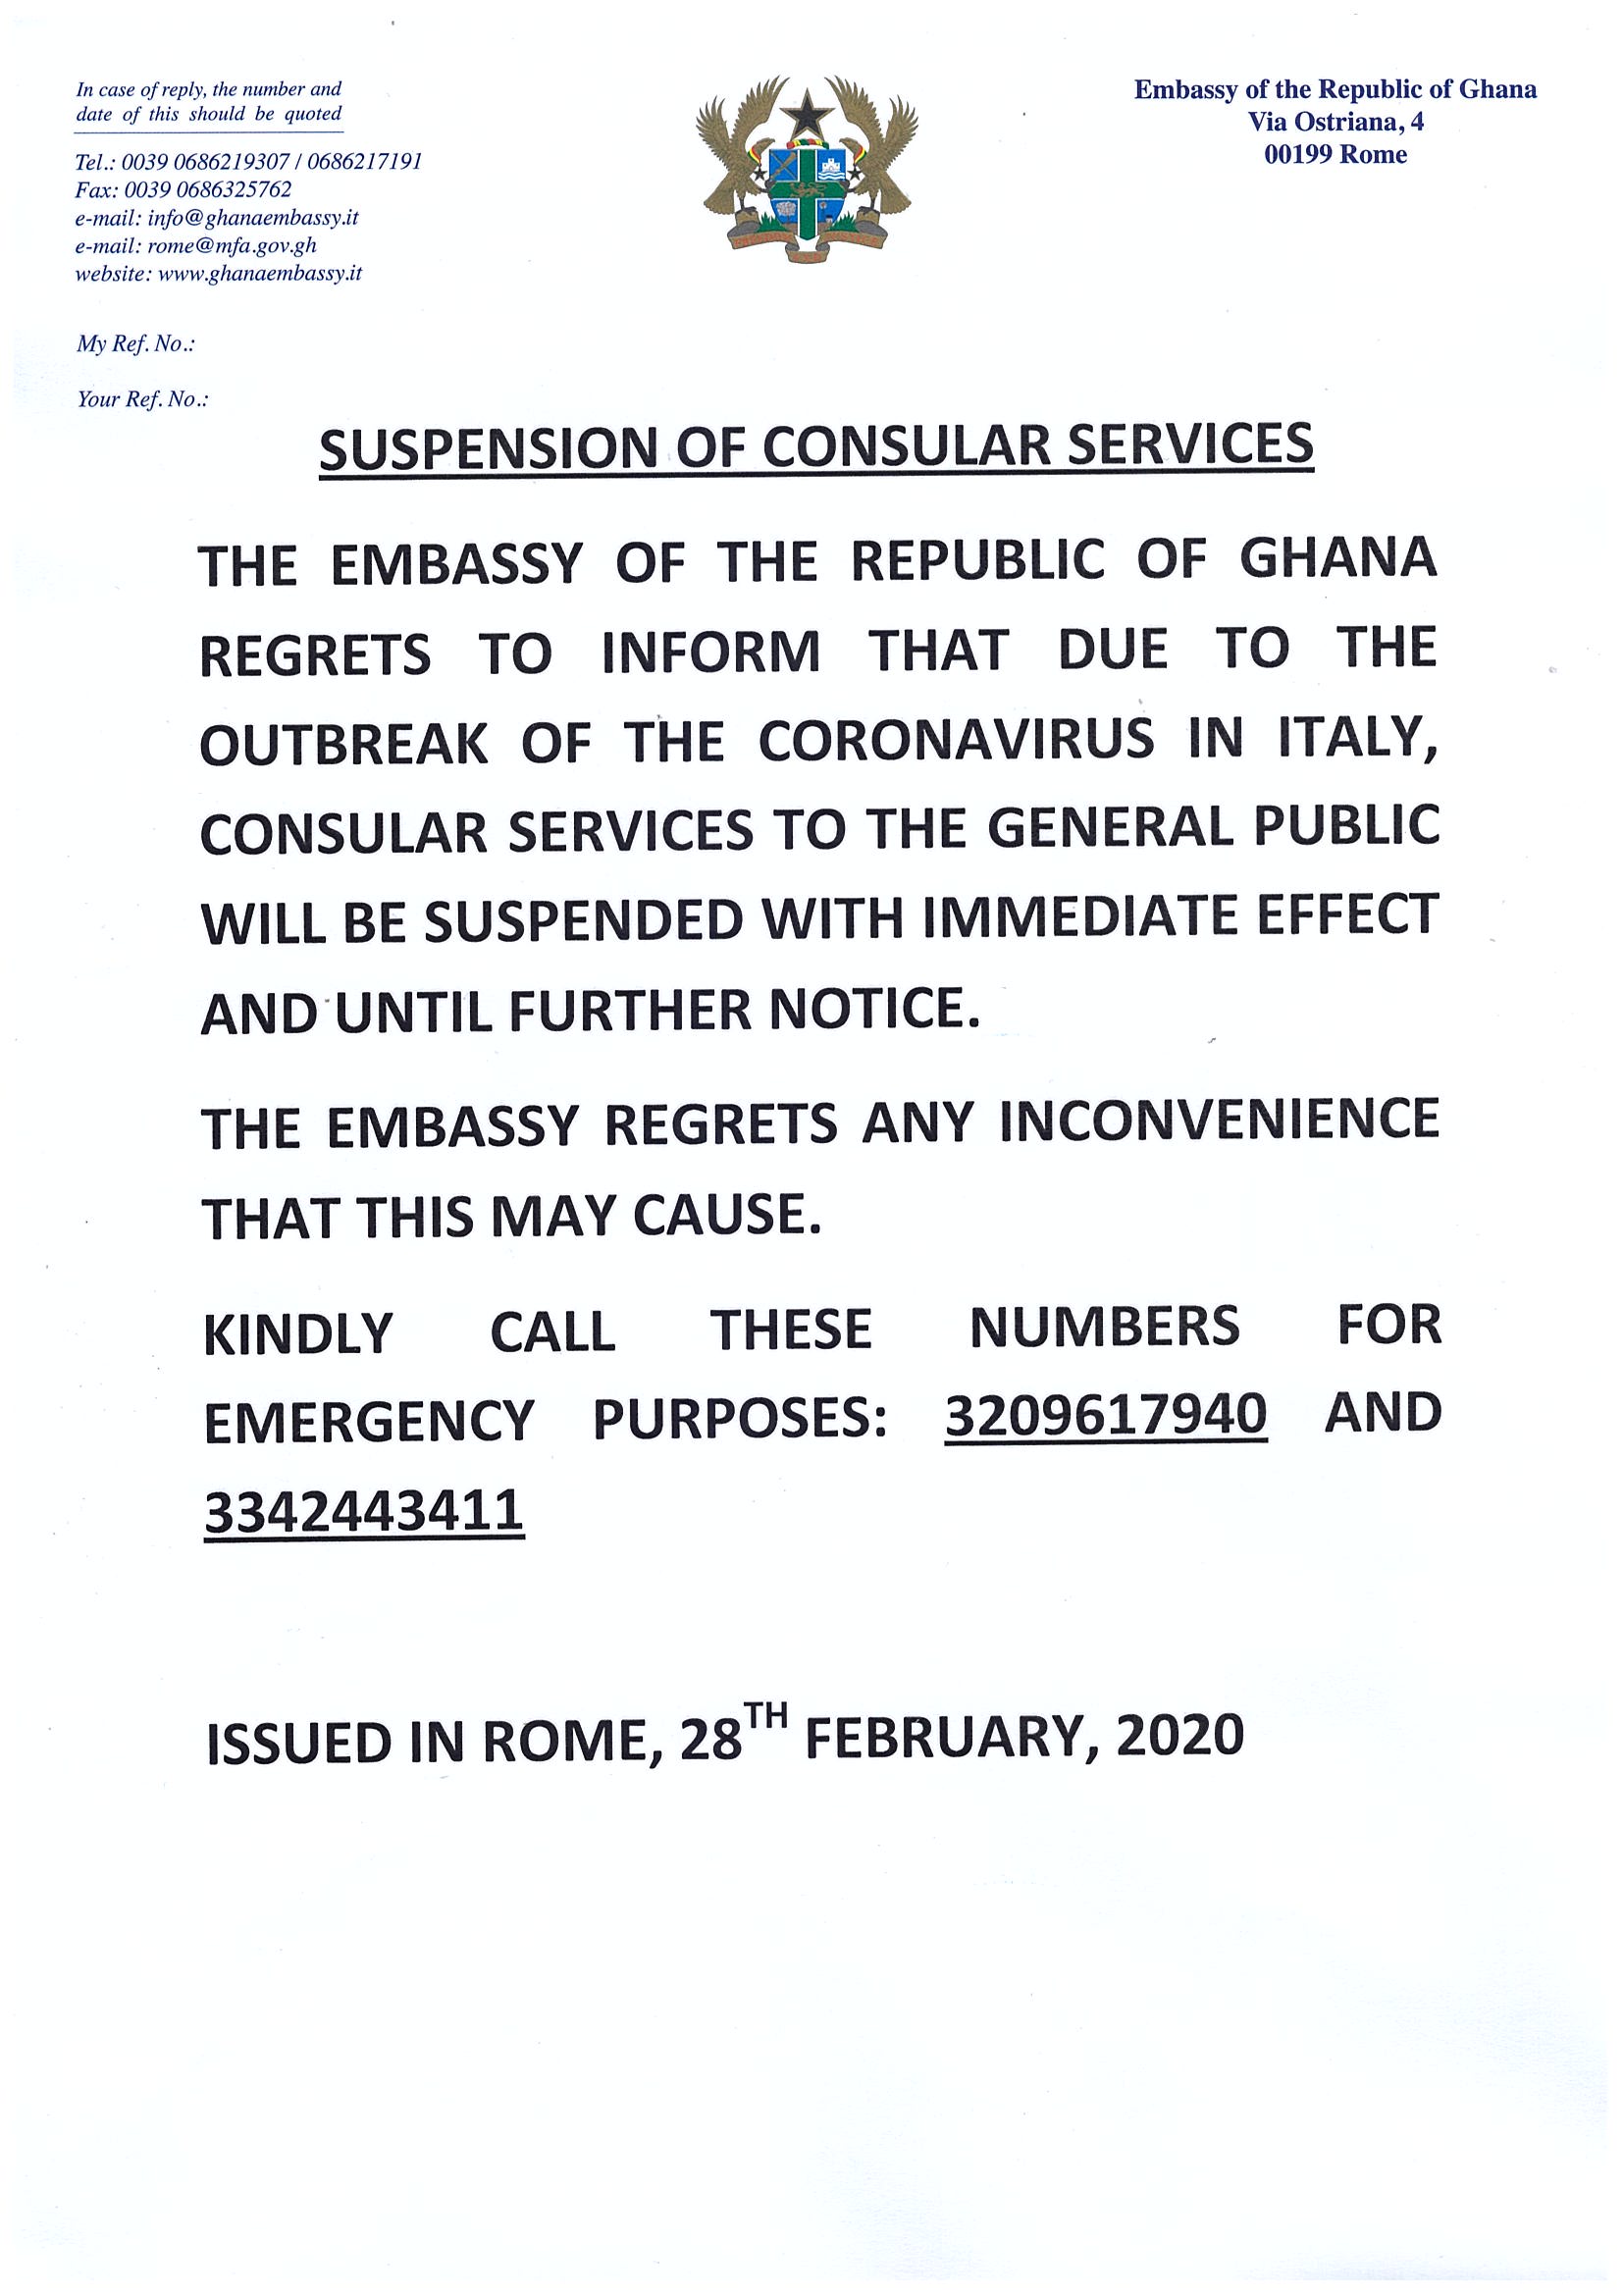 Suspension of Consular Services